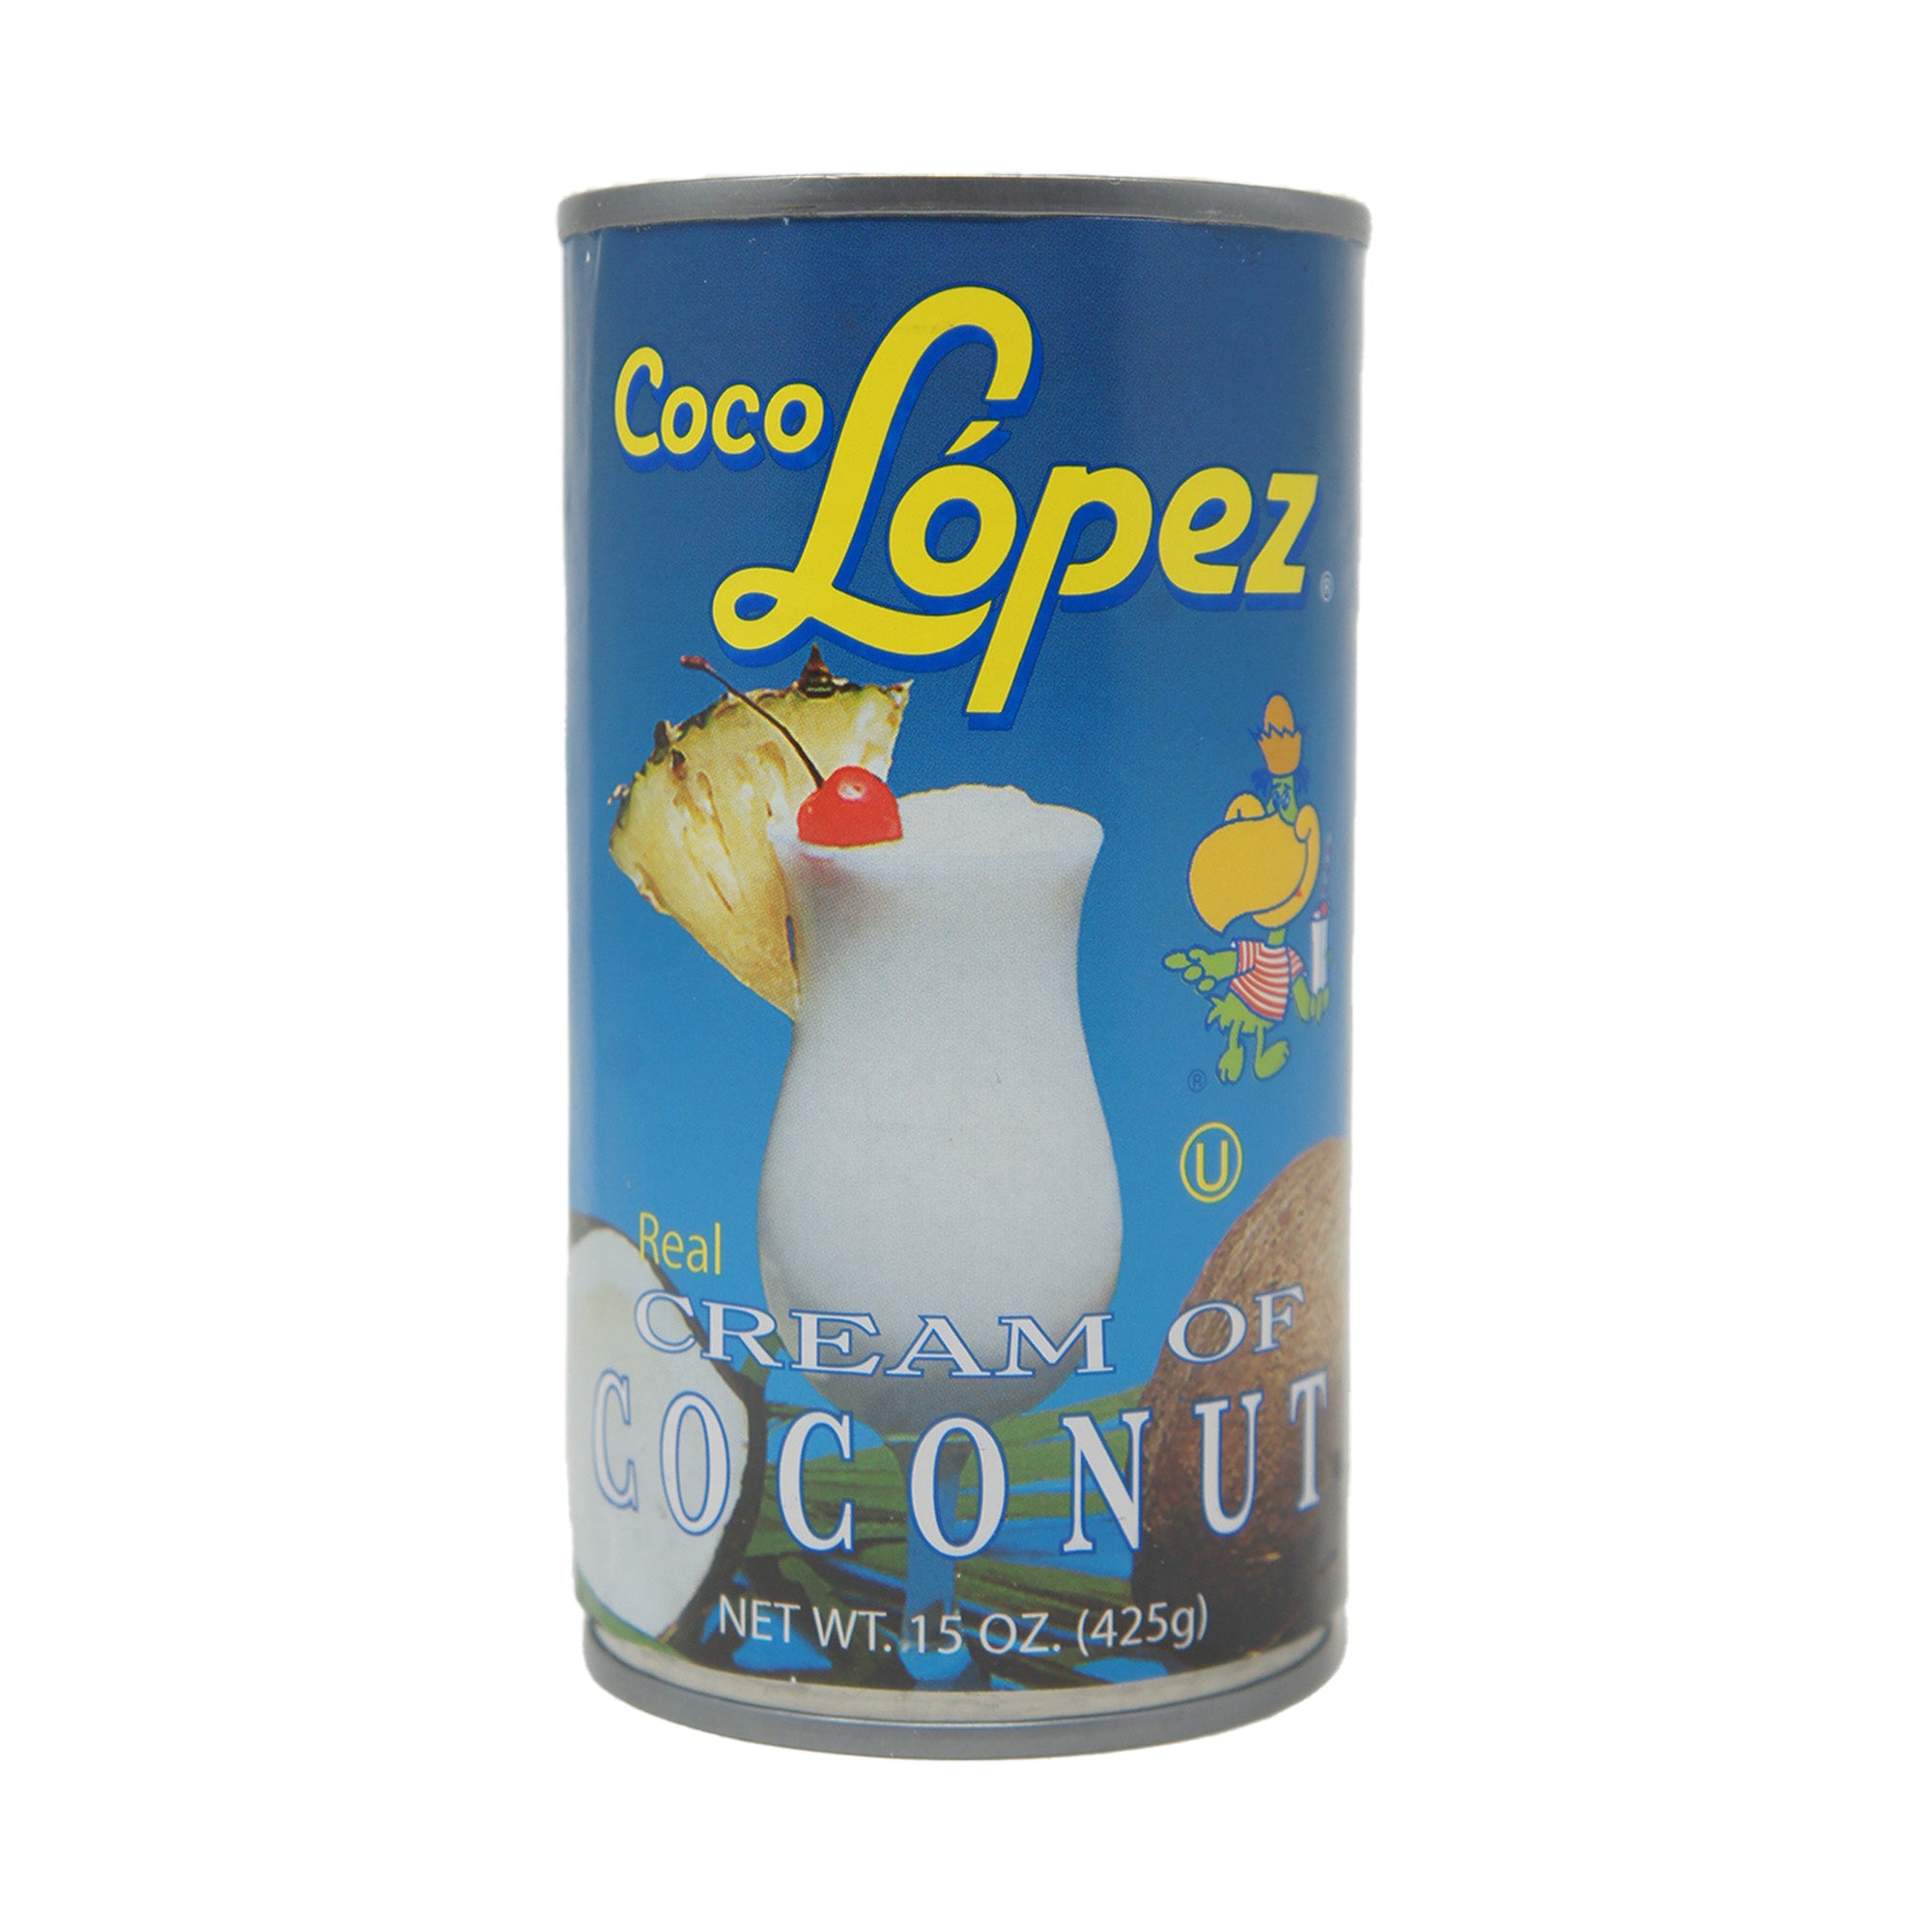 Coco Lopez Cream of Coconut, 15 oz